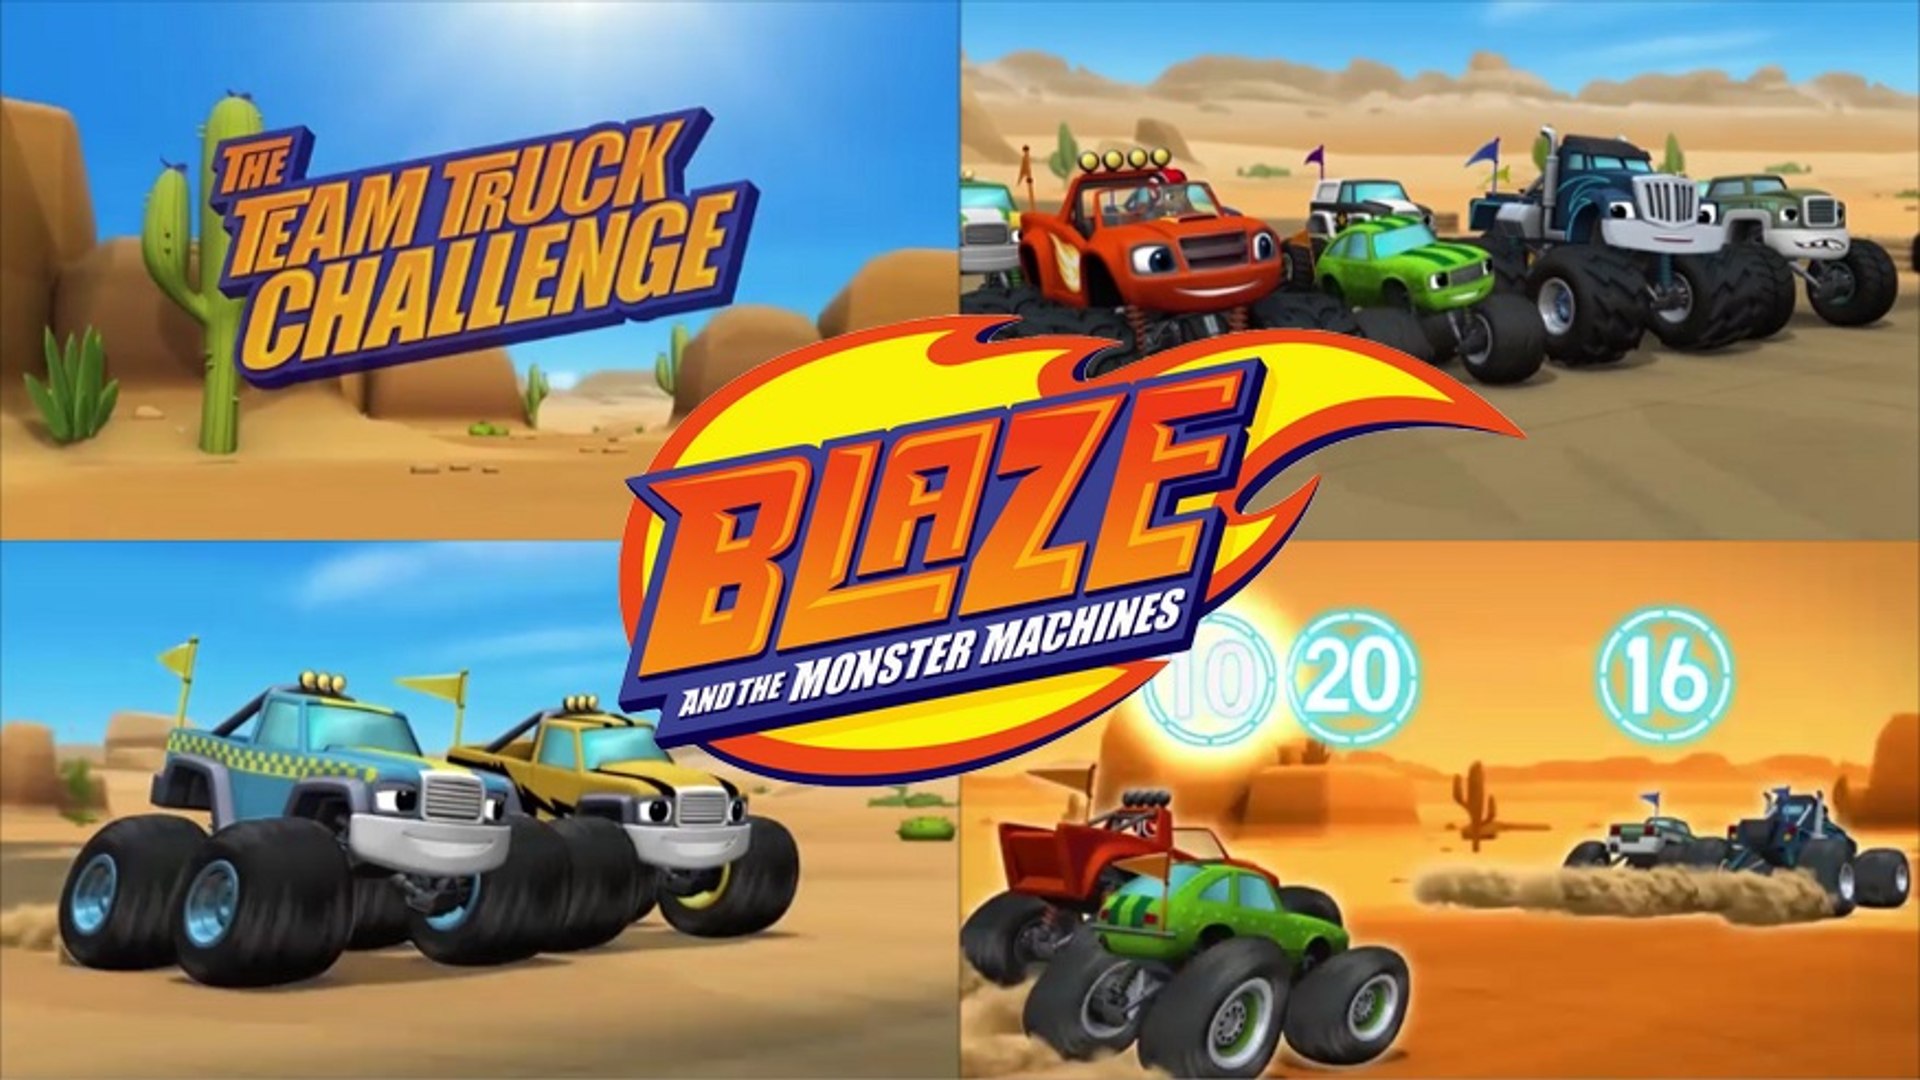 Blaze and the Monster Machines (Séries): O Desafio das Equipes de Carros  S01 E09, Programação de TV